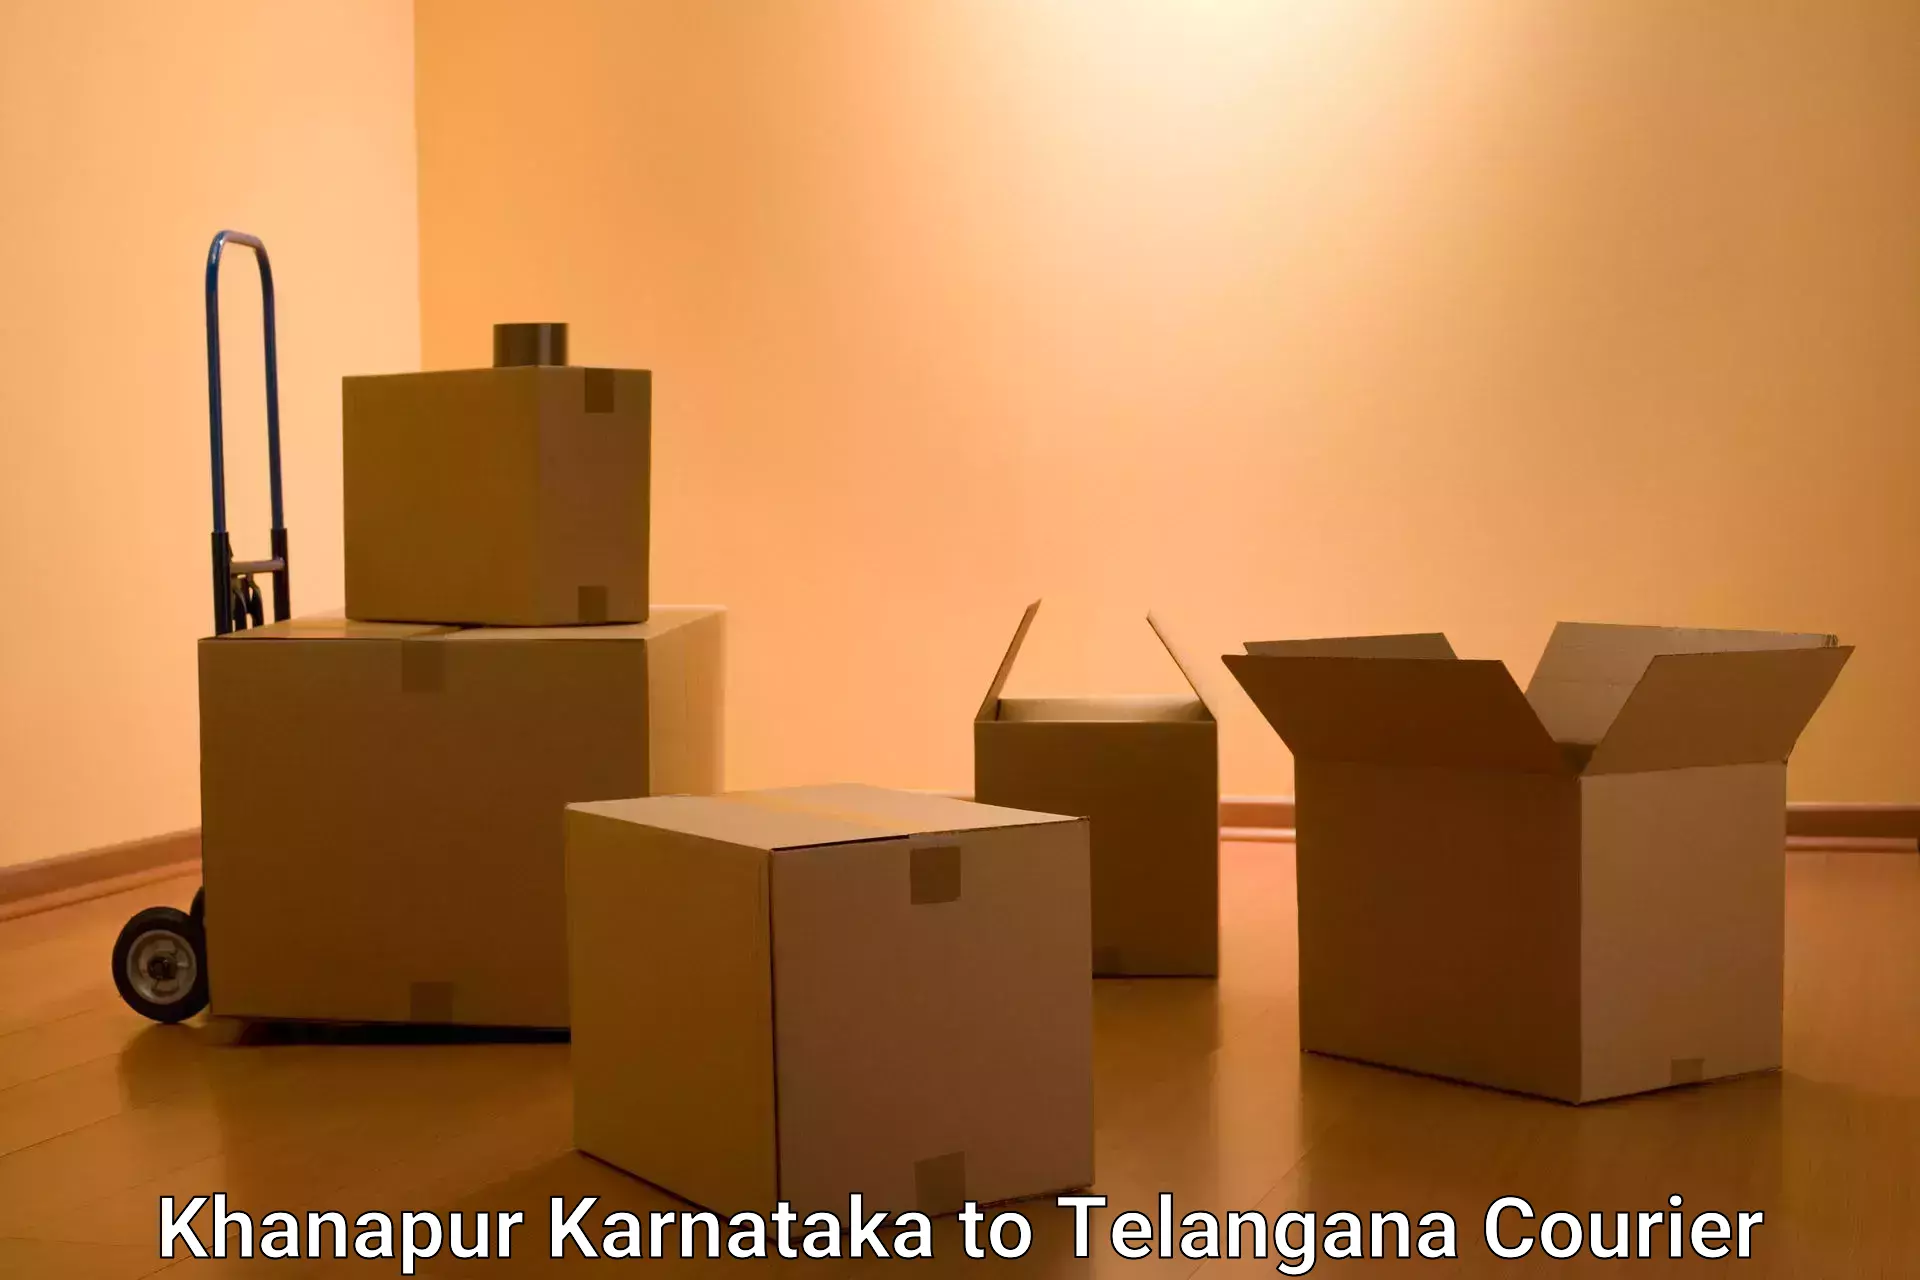 Global shipping solutions Khanapur Karnataka to Banswada